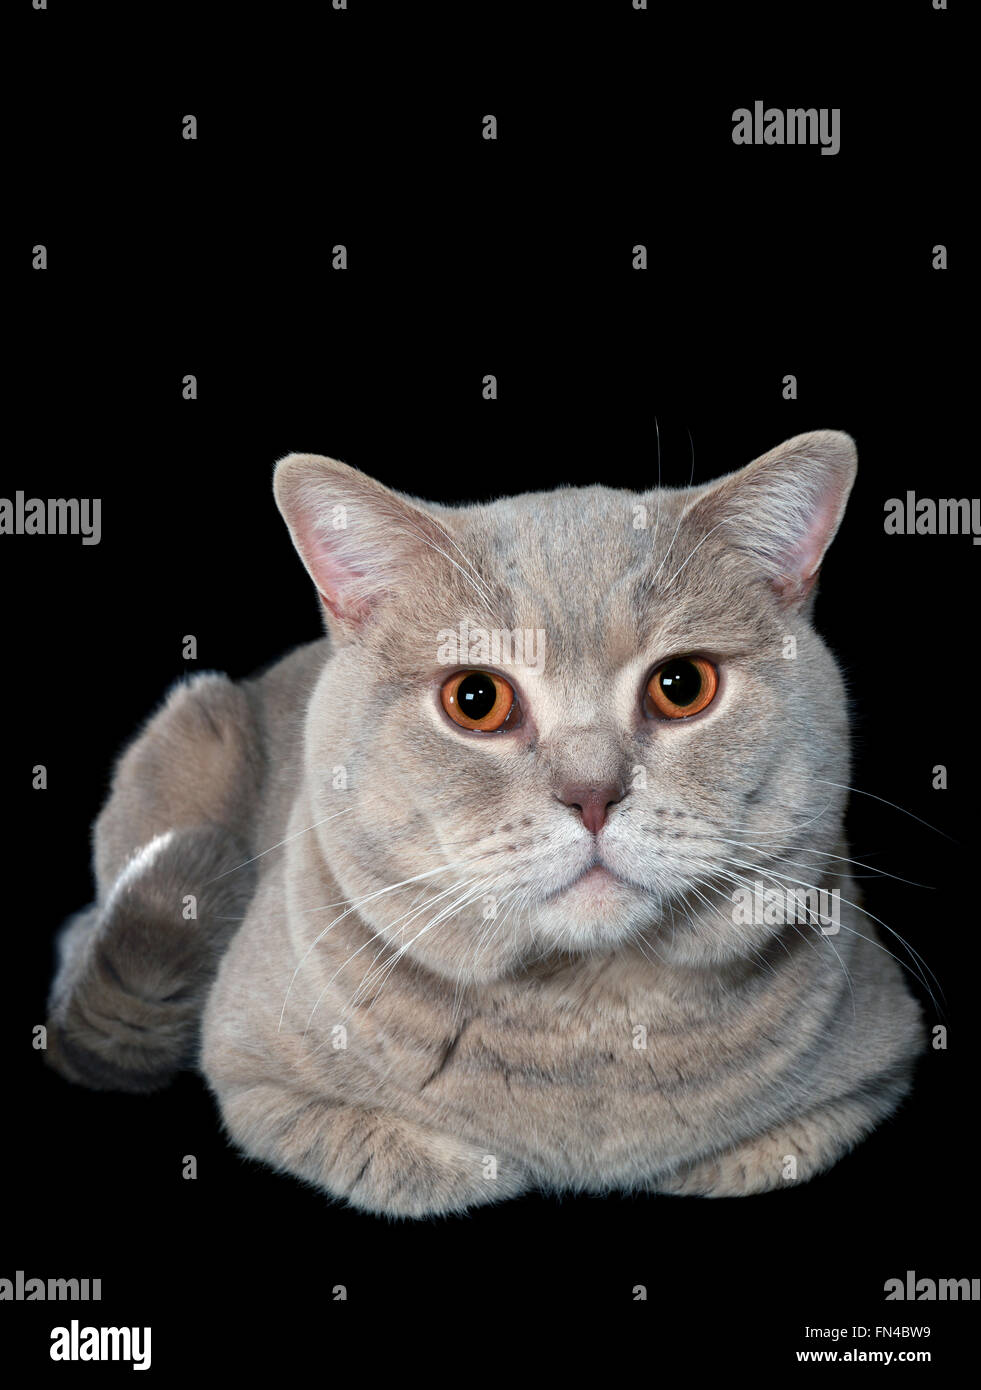 British Shorthair Cat Isolated on Black Background Stock Photo